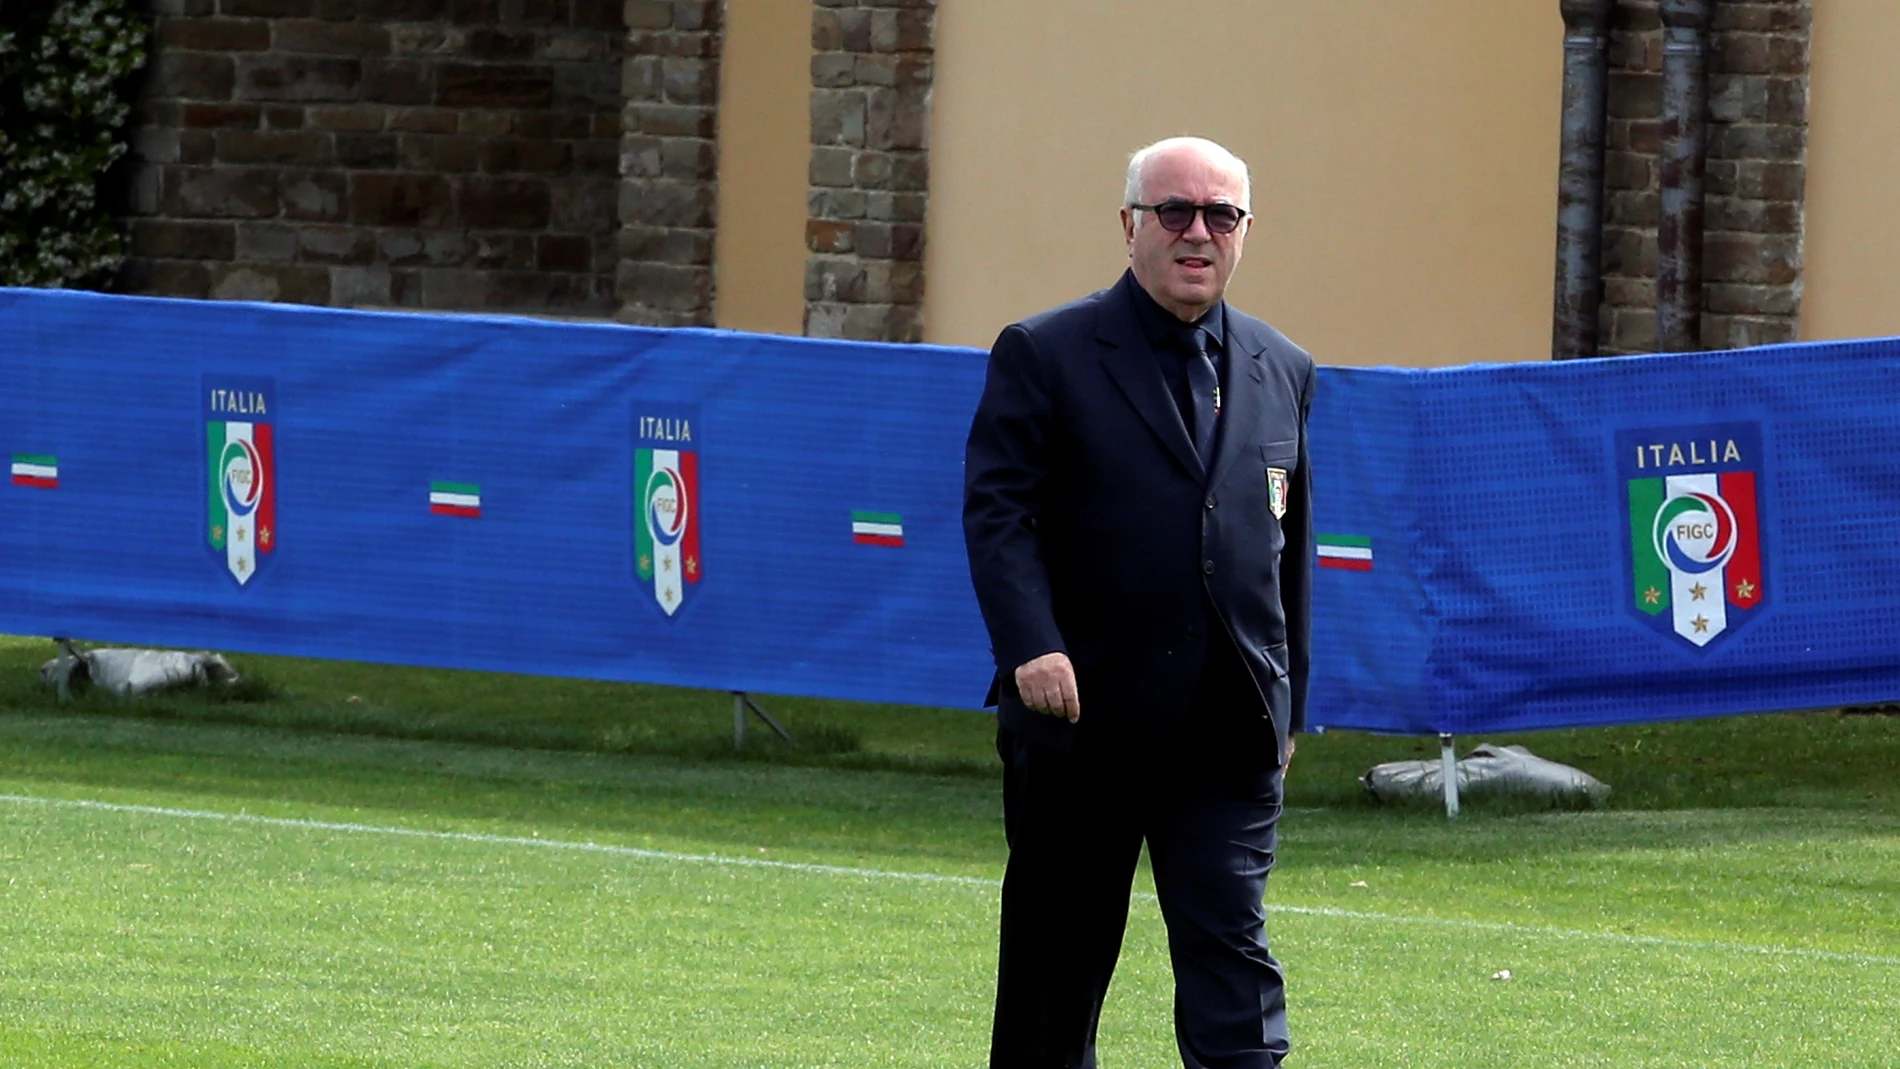 El presidente de la Federación de Fútbol de italia, Carlo Tavecchio